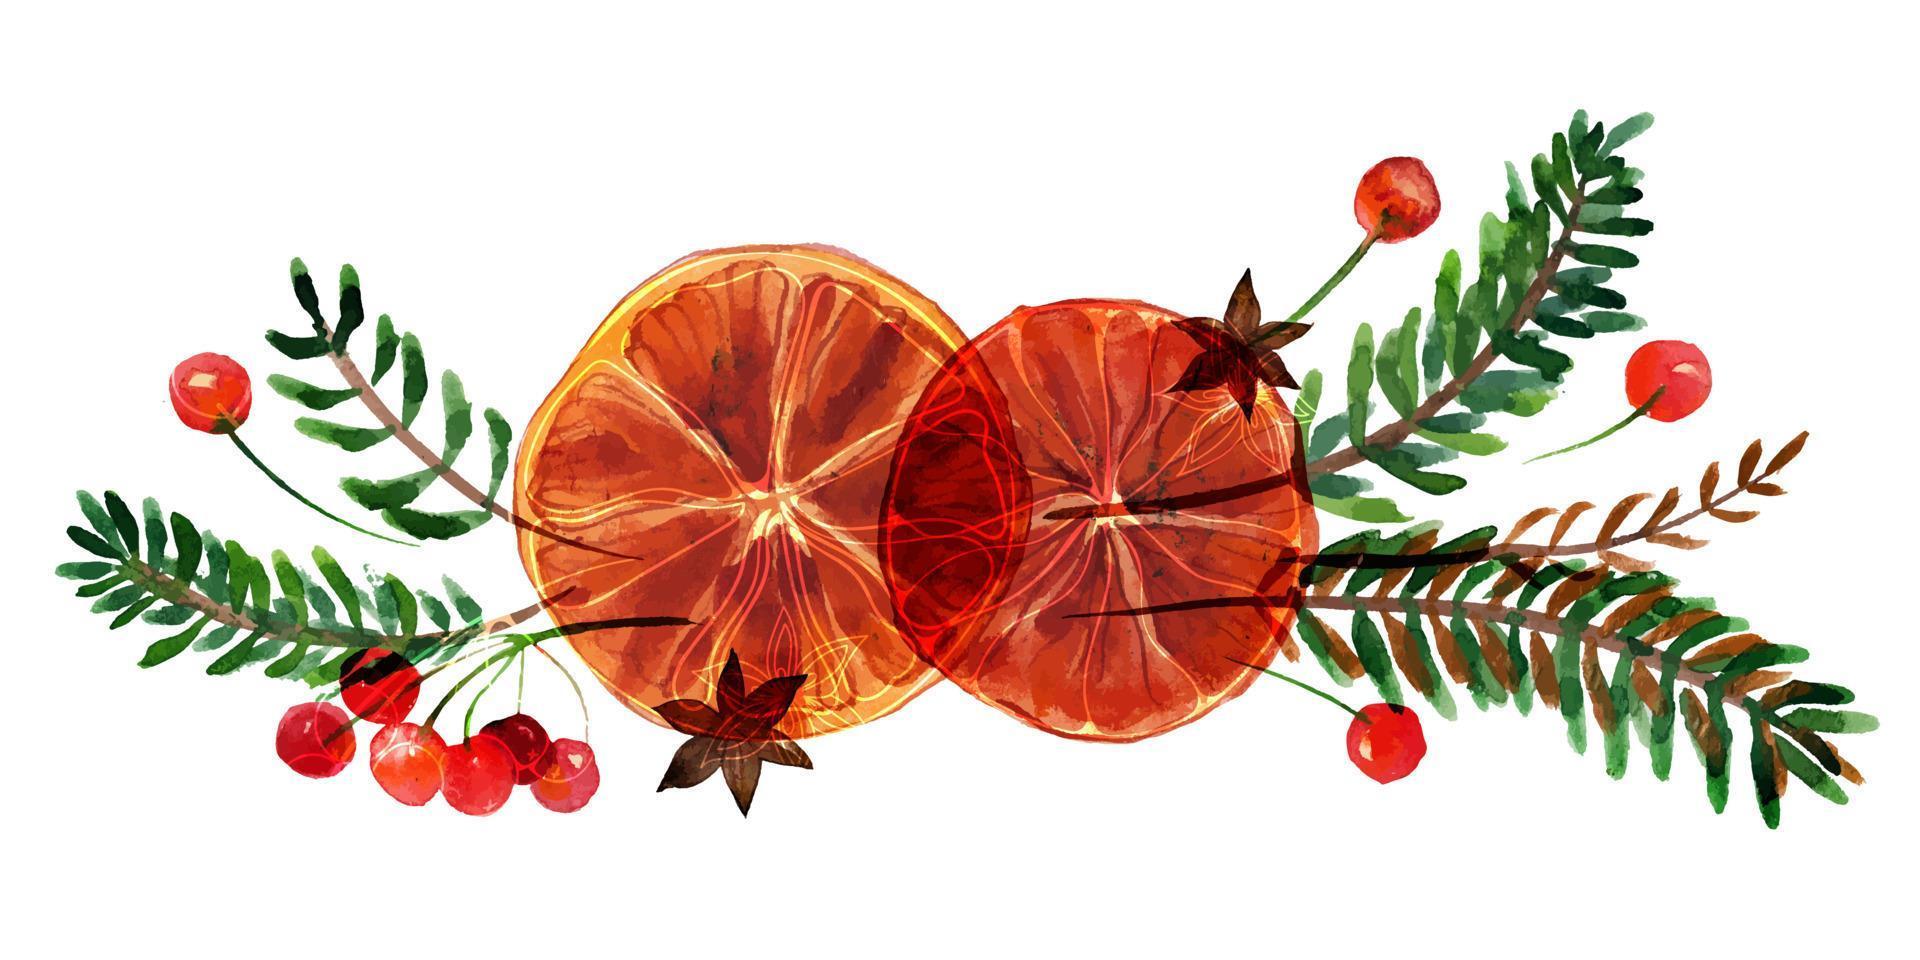 Kerst aquarel compositie met sinaasappelen en kaneel en rode bessen takken op witte achtergrond. decor voor schattig kerst- en nieuwjaarstextiel en inpakpapier en wenskaarten vector